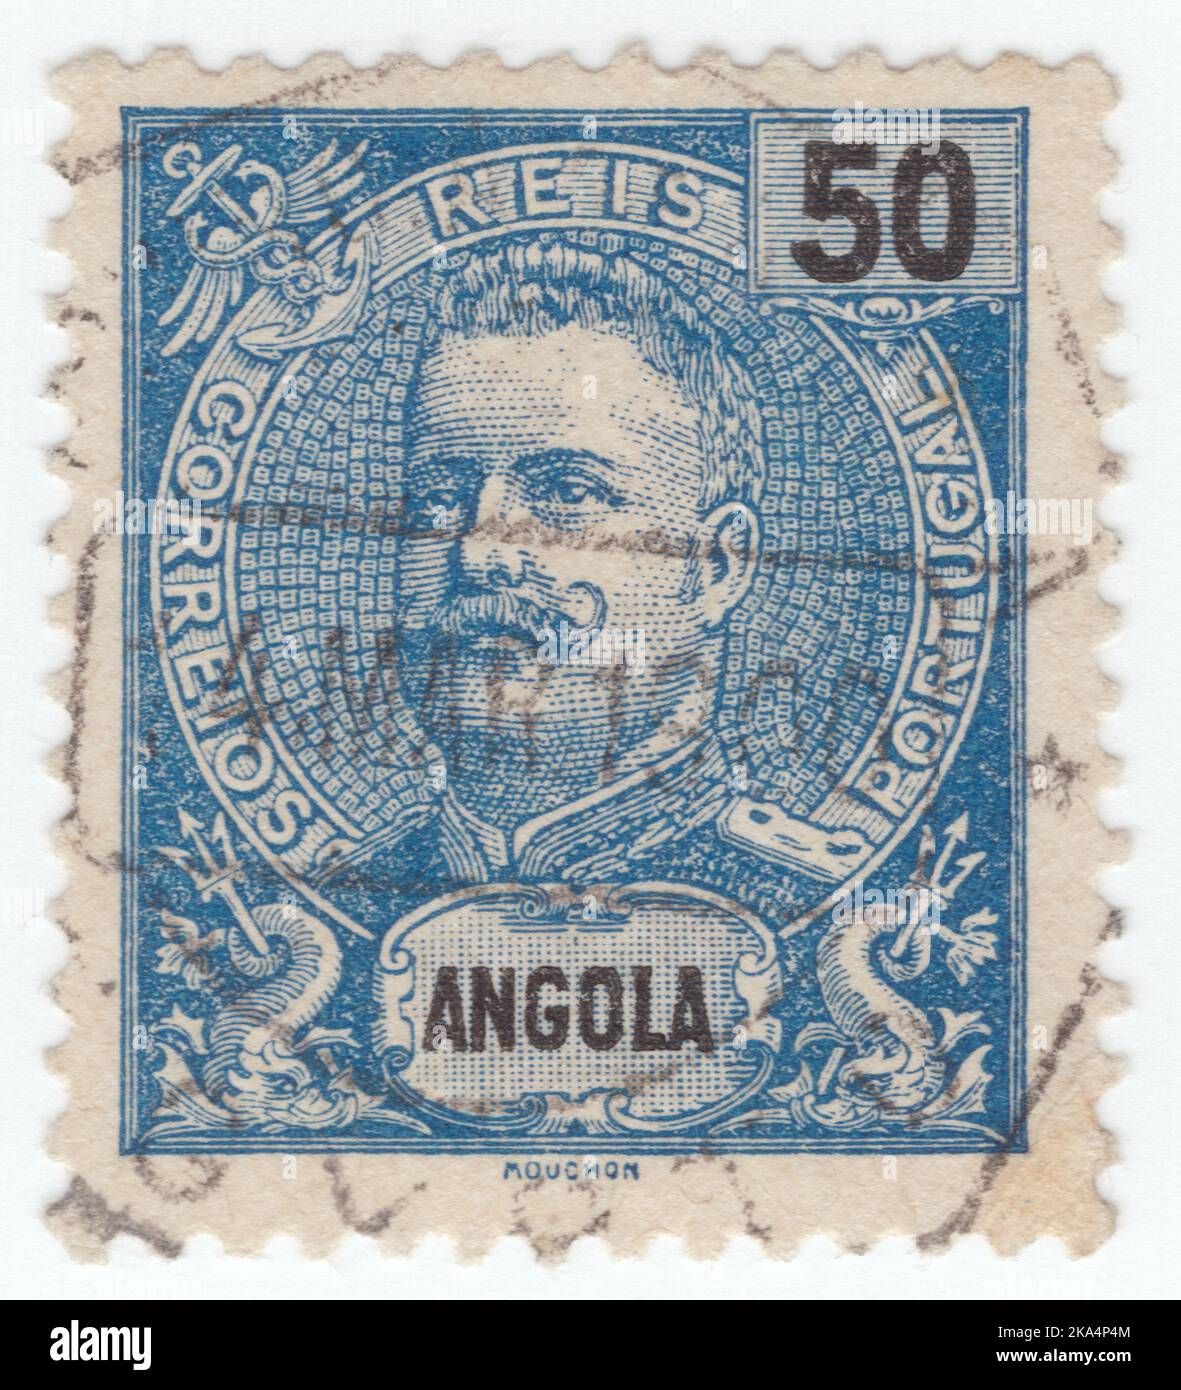 ANGOLA - UM 1898: Eine blaue Briefmarke aus dem Jahr 50 mit dem Porträt von Dom Carlos I., bekannt als Diplomat, Märtyrer und Ozeanograph, war von 1889 bis zu seiner Tötung im Jahr 1908 König von Portugal Stockfoto